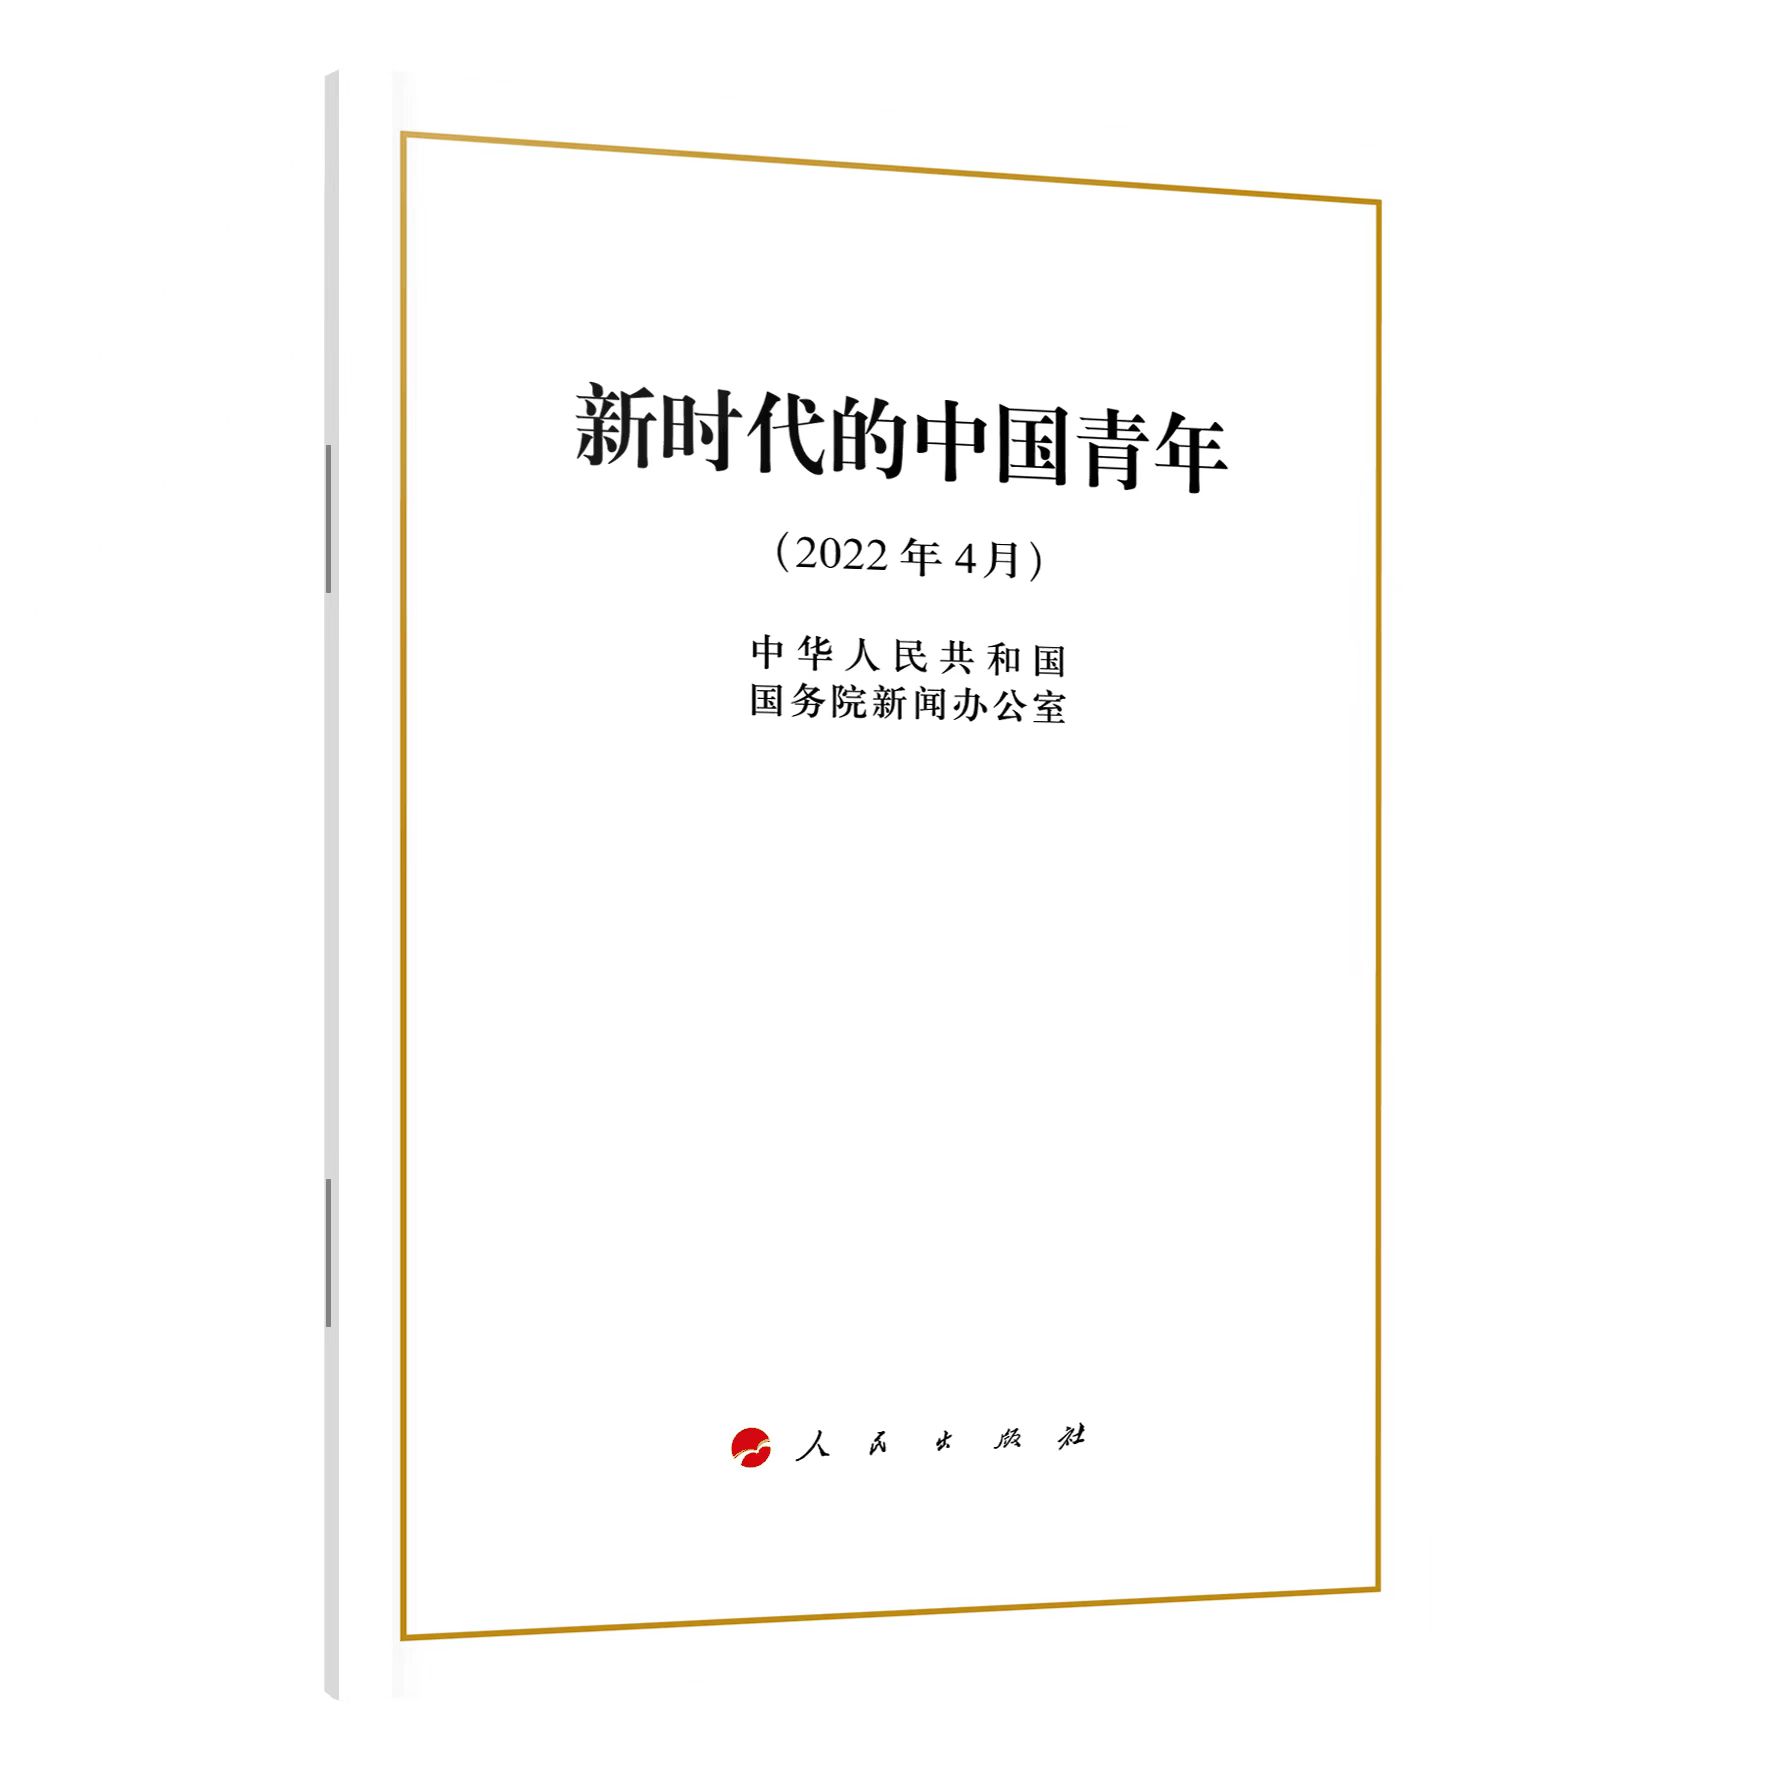 正版2022年4月 新时代的中国青年 白皮书 32开 中华人民共和国国务院新闻办公室  人民出版社 9787010247007